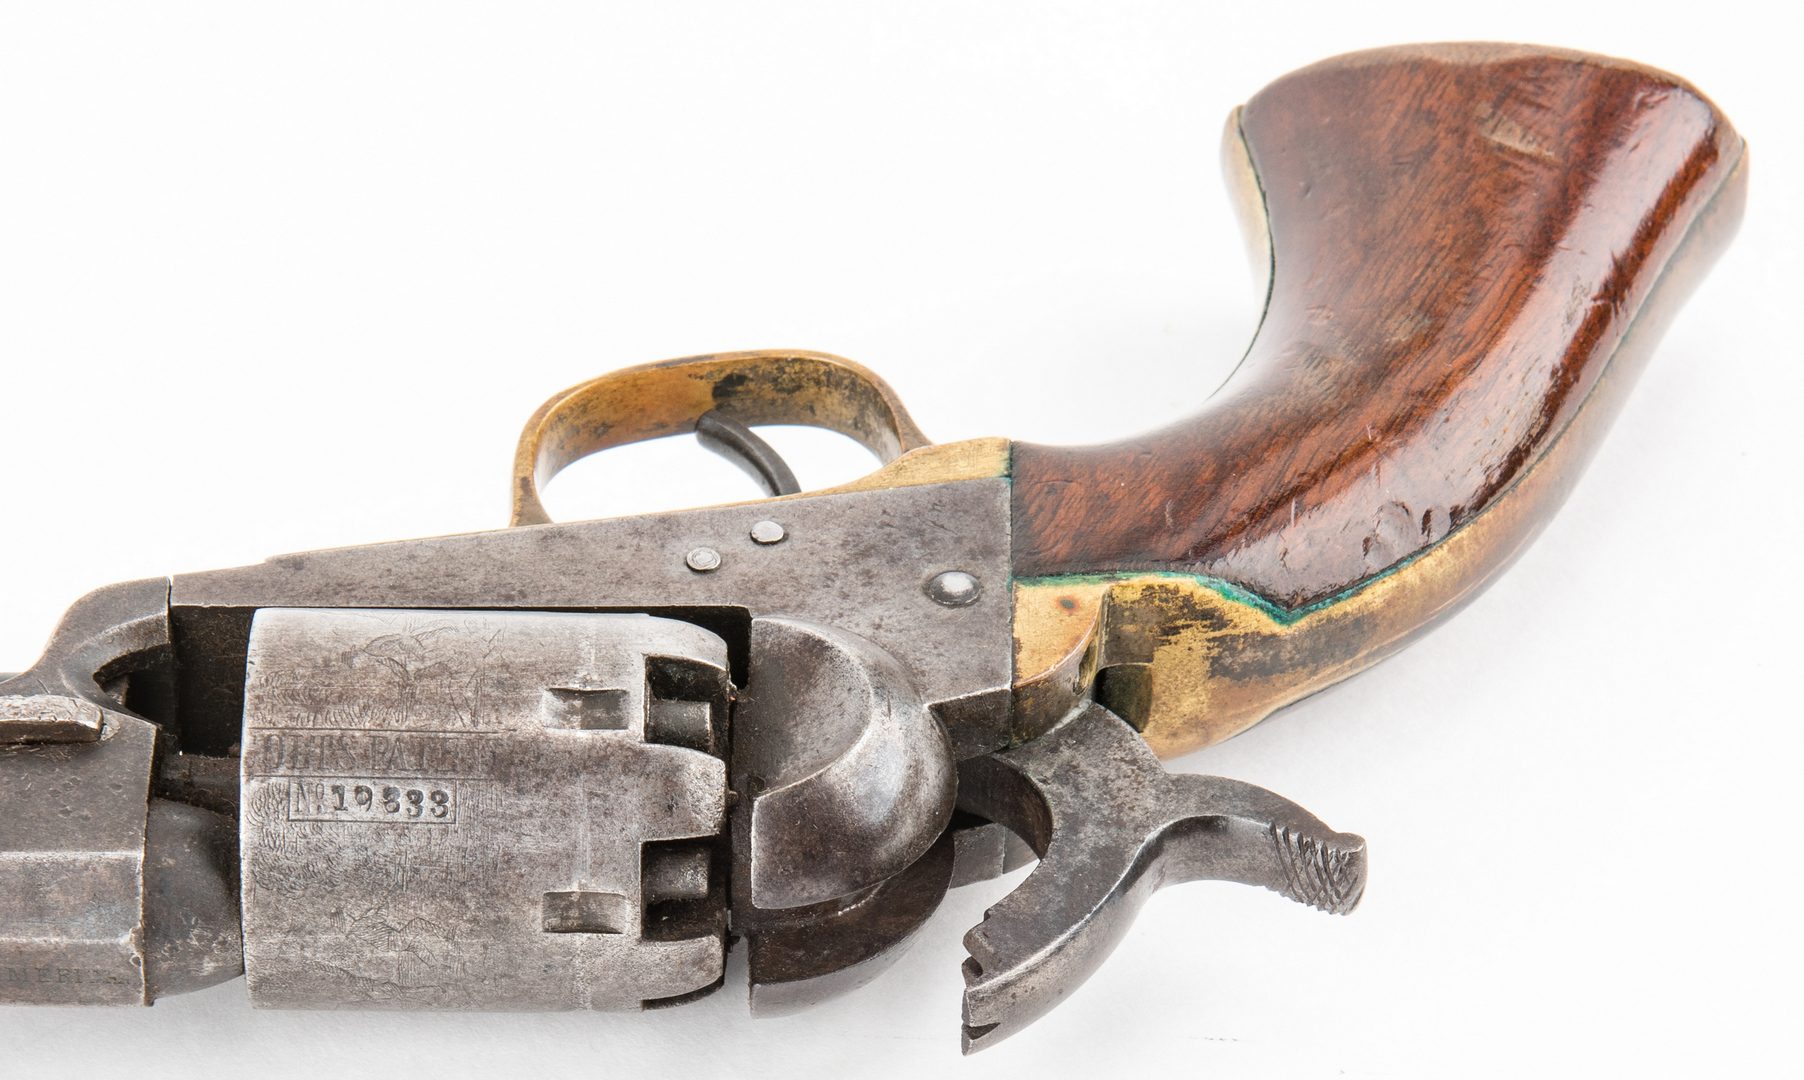 Lot 314: Civil War era Colt Model 1849 Pocket Revolver, .31 cal, and Holster